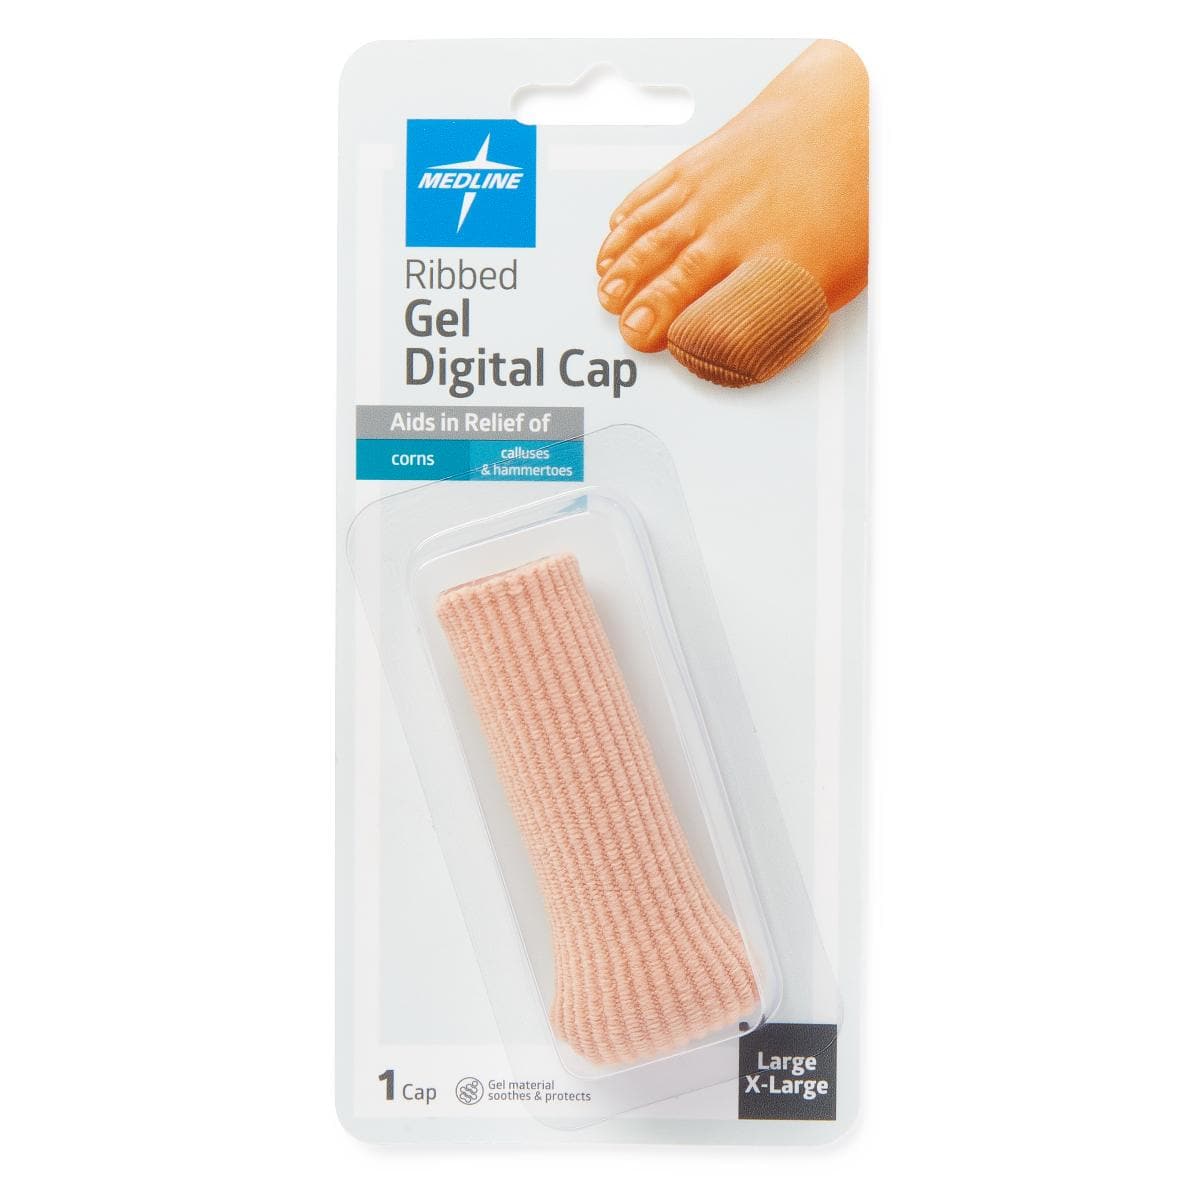 Medline Beige / L/XL Medline Gel Ribbed Digital Toe Caps